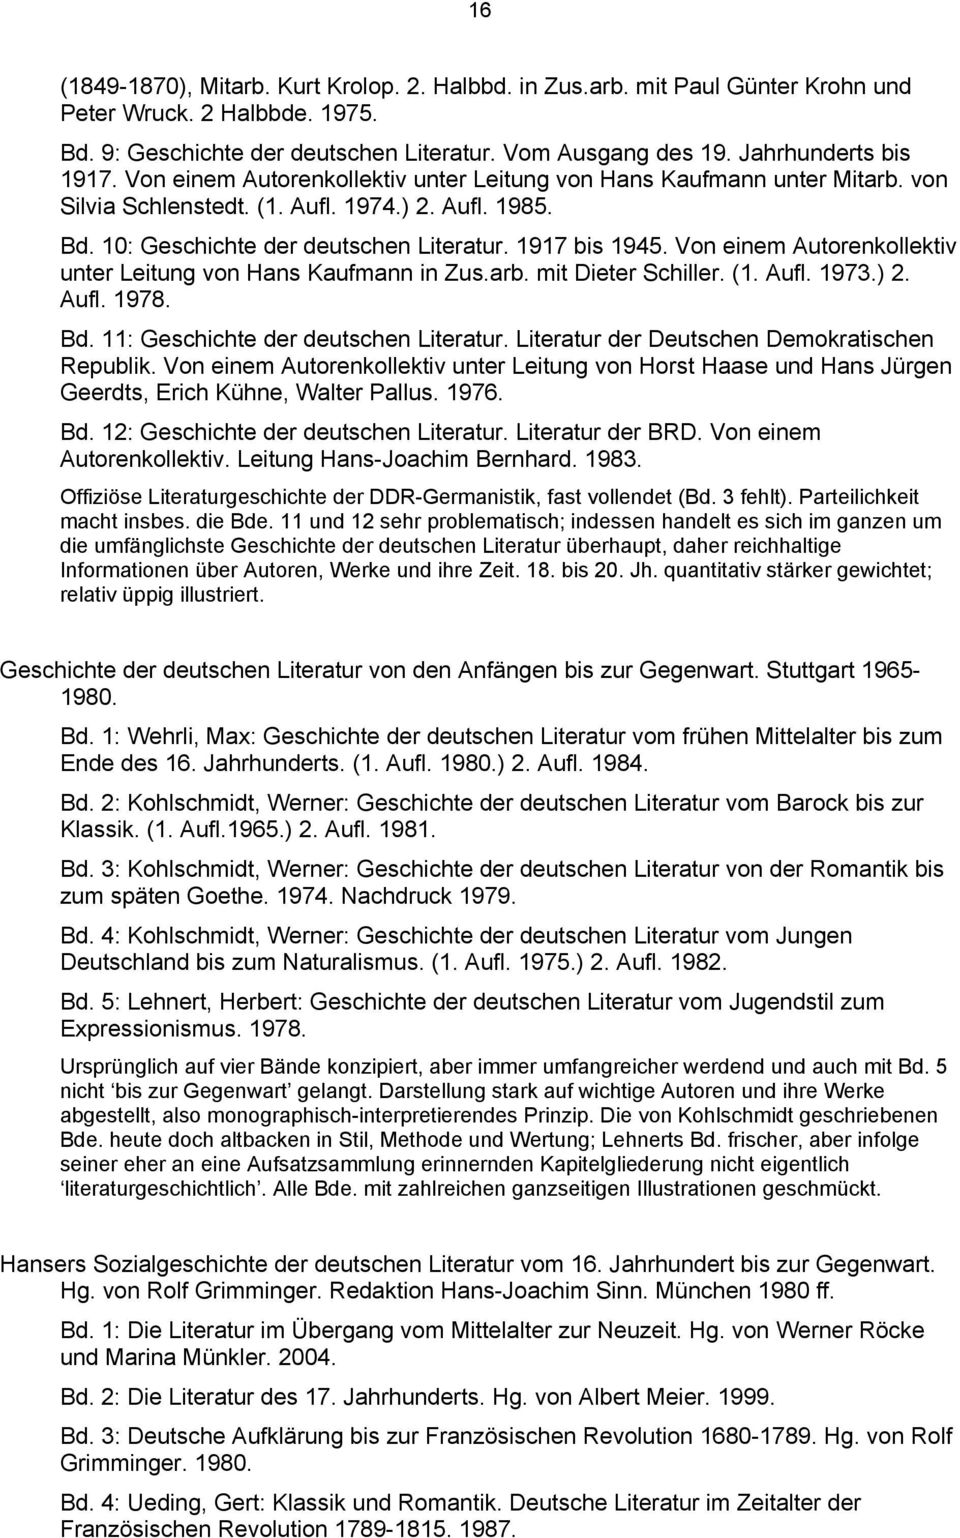 1917 bis 1945. Von einem Autorenkollektiv unter Leitung von Hans Kaufmann in Zus.arb. mit Dieter Schiller. (1. Aufl. 1973.) 2. Aufl. 1978. Bd. 11: Geschichte der deutschen Literatur.